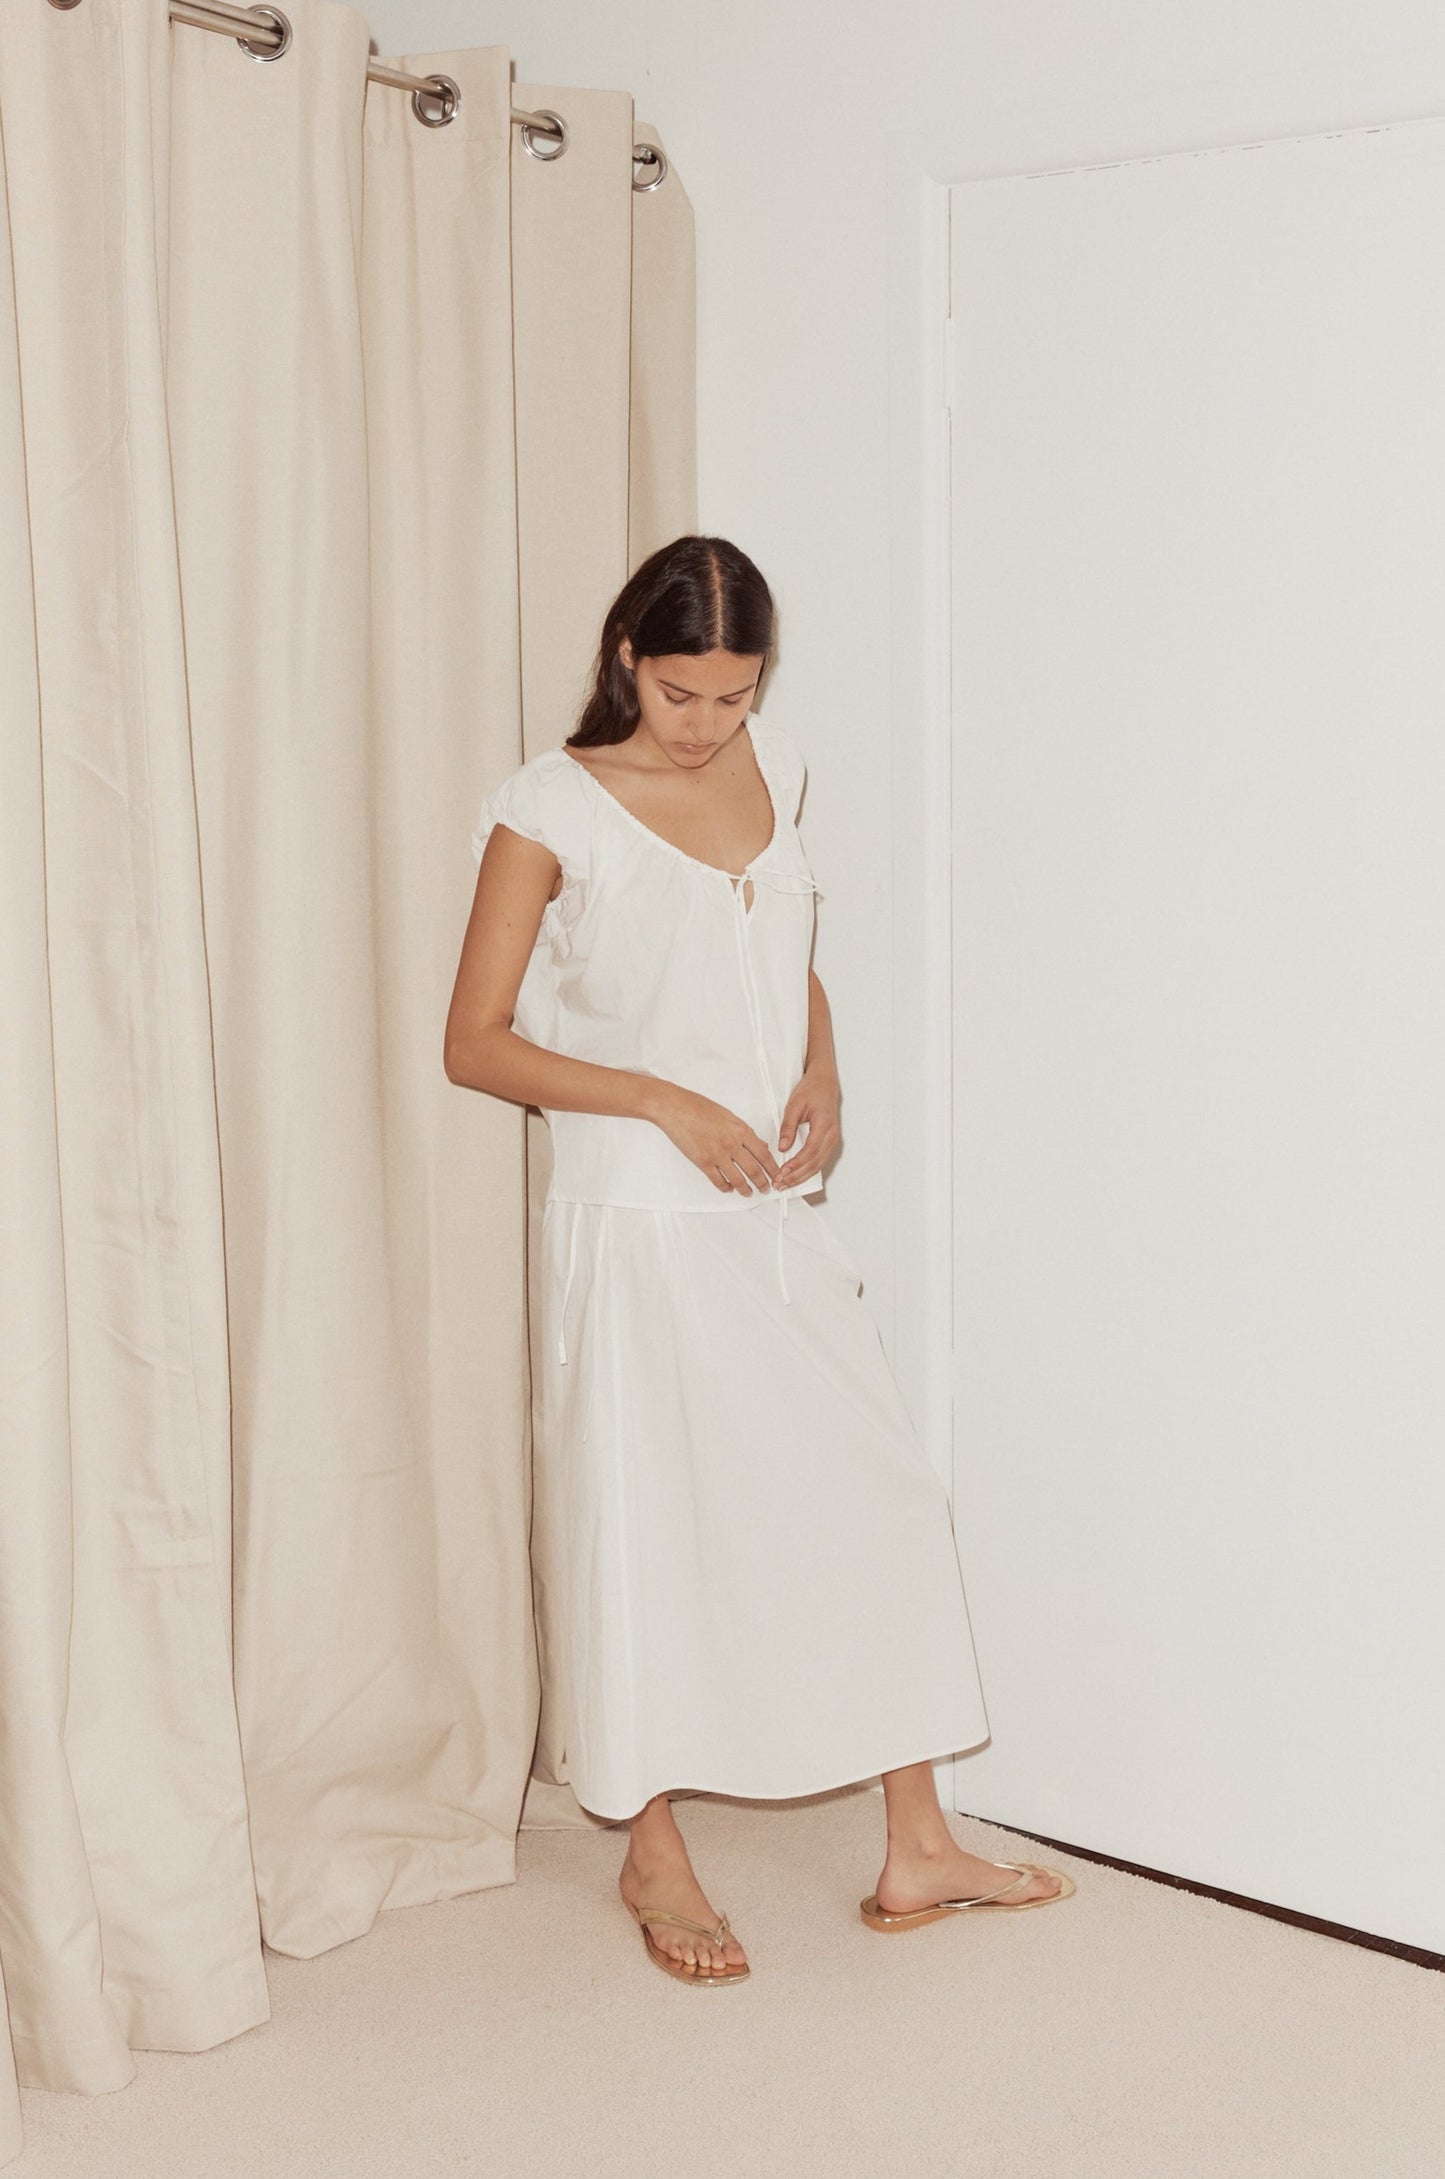 Female model wearing Pintuck Skirt White by Deiji Studios against plain background